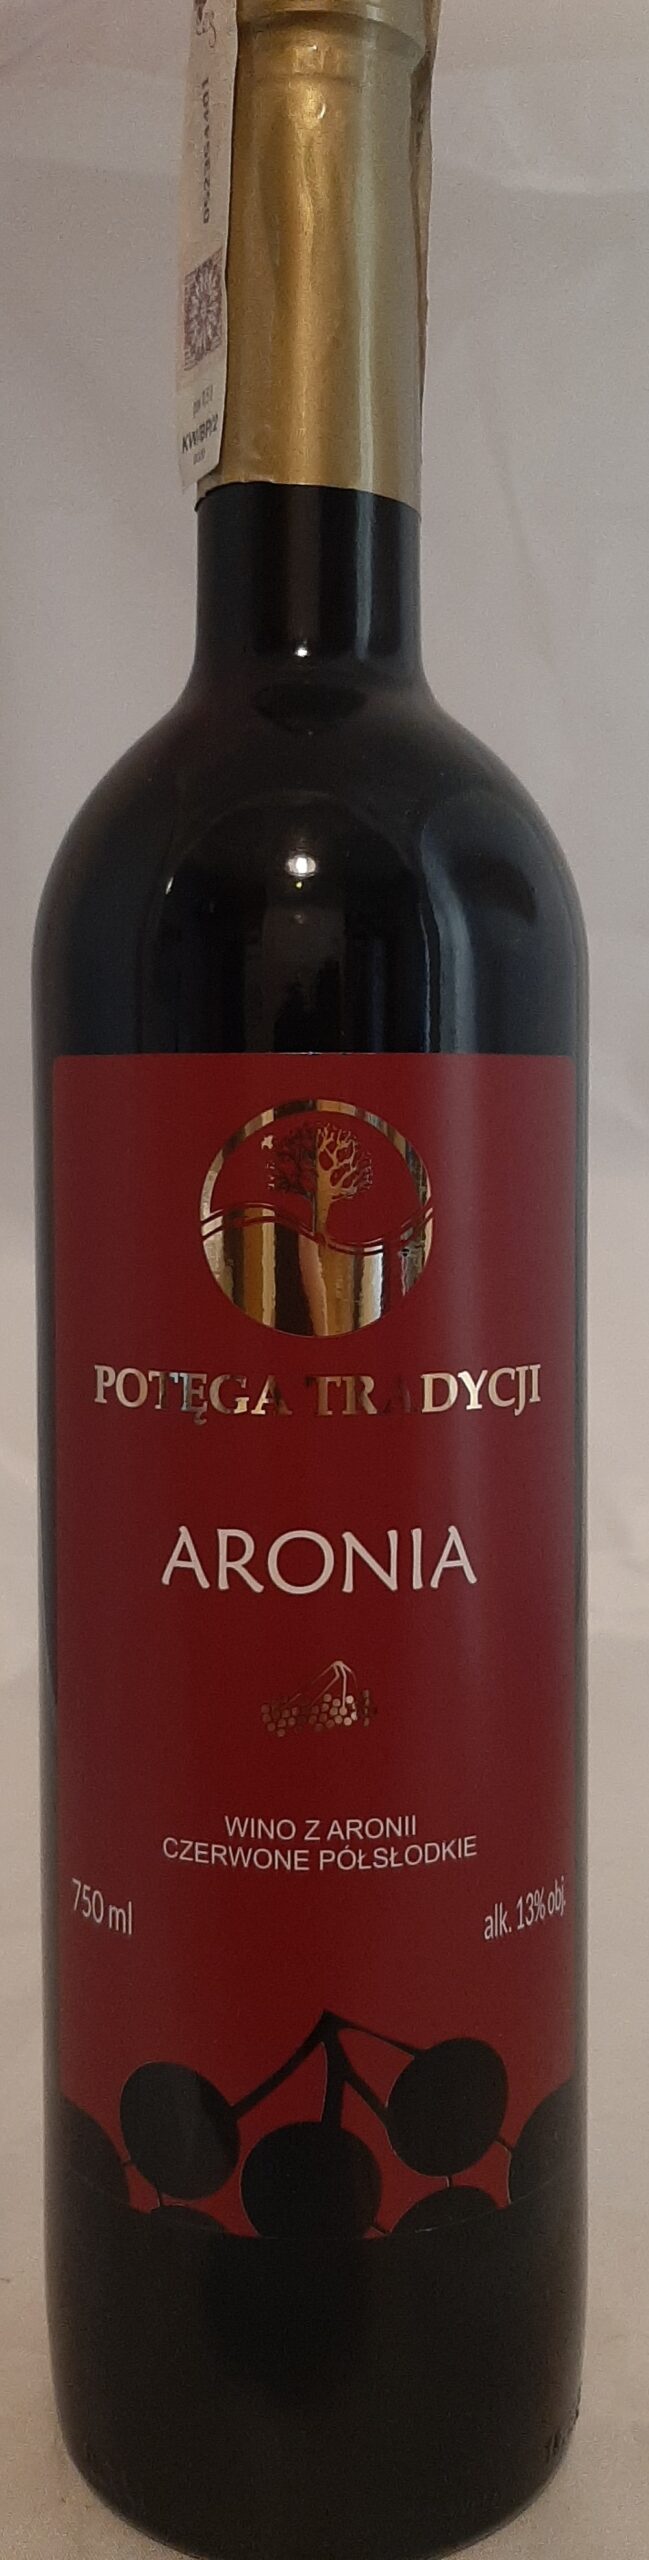 Wino aroniowe półsłodkie 0,75l